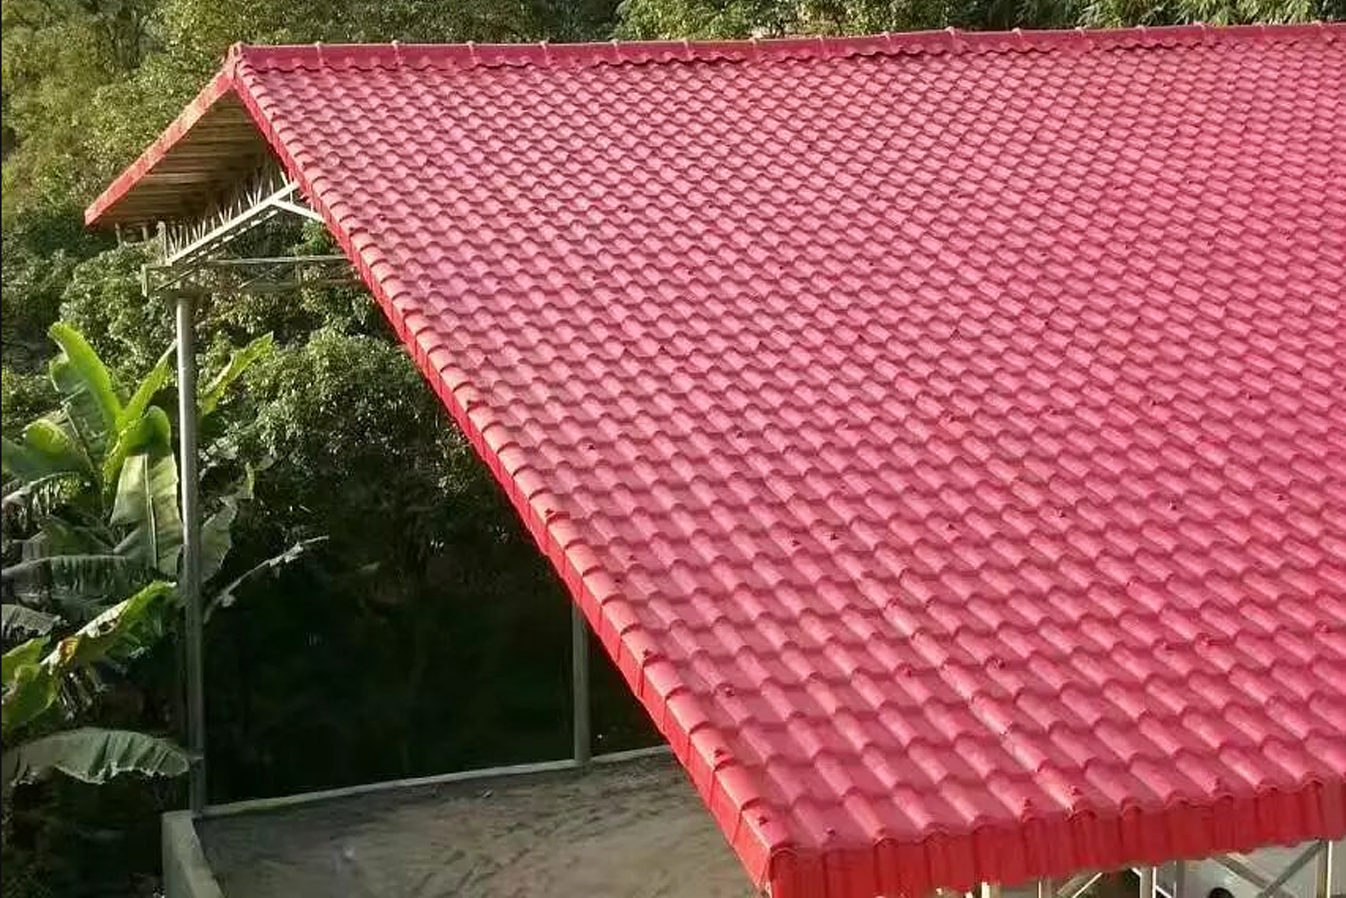 夏天闷热,屋顶露台凉亭可以用合成树脂瓦隔热?